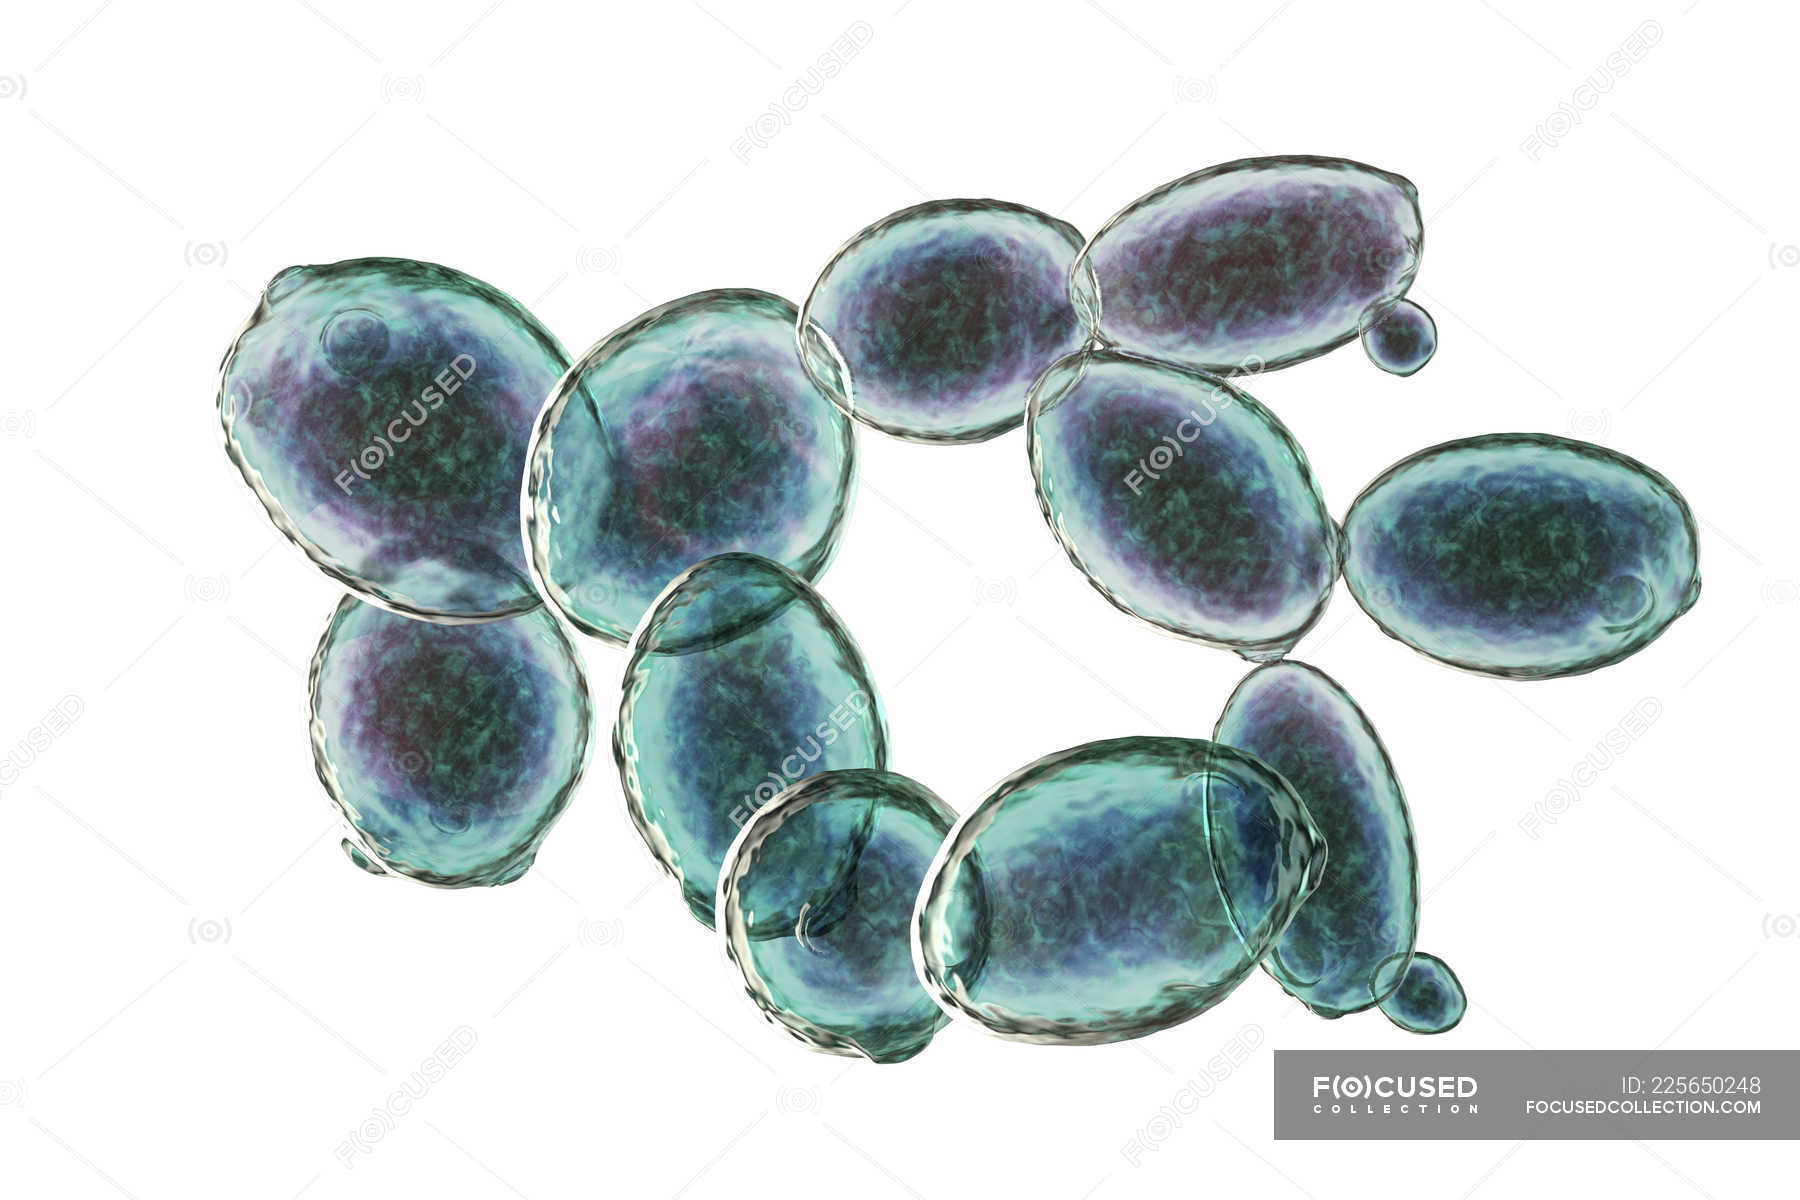 Ilustracion Digital De Celulas De Levadura En Ciernes Saccharomyces Cerevisiae Hongos Probiotico Stock Photo